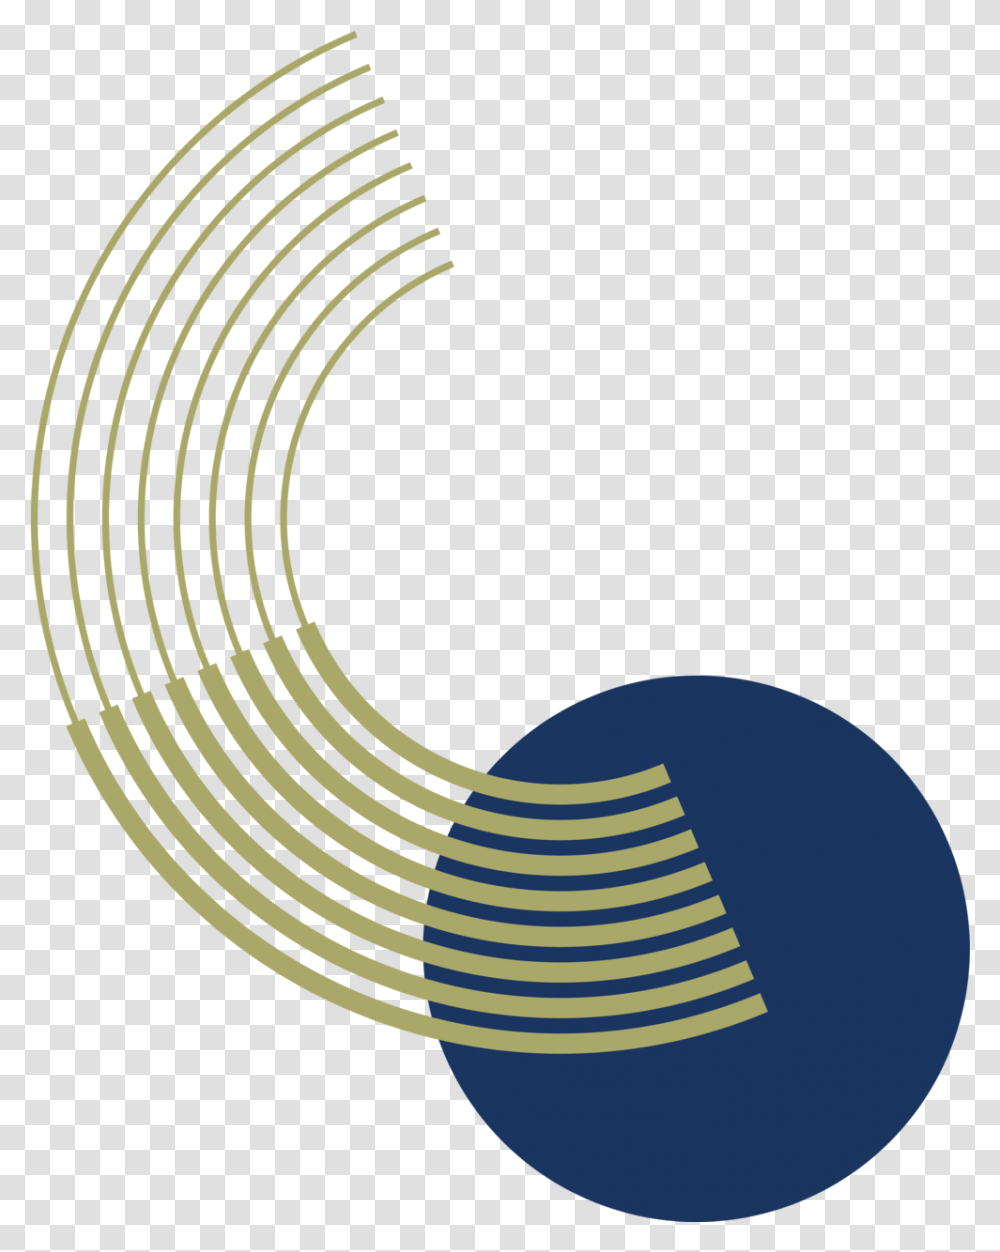 Sfm Group Vertical, Spiral, Coil, Symbol, Logo Transparent Png